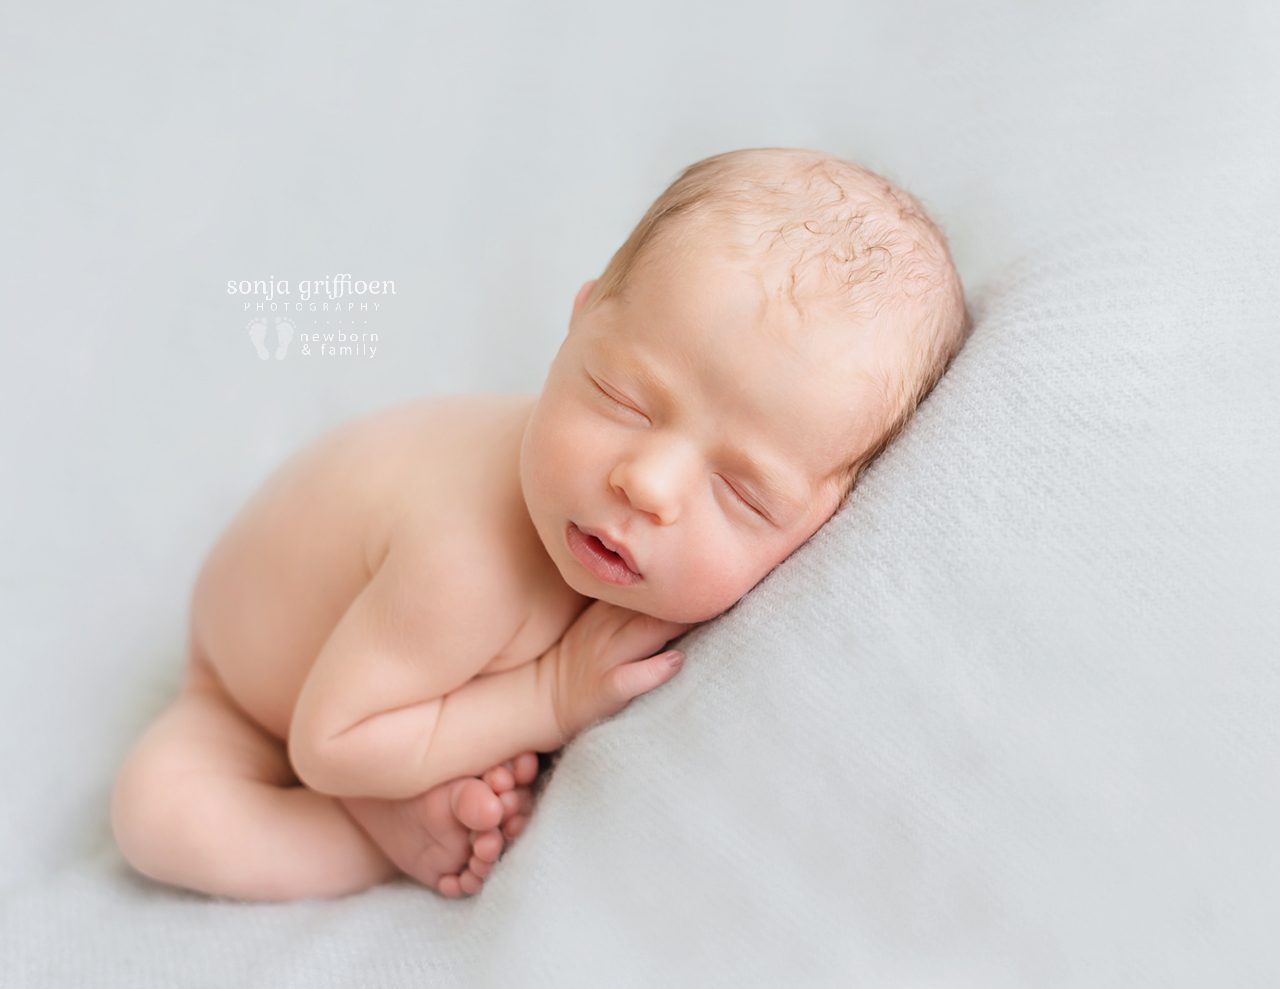 Archie-Newborn-Brisbane-Newborn-Photographer-Sonja-Griffioen-13b.jpg